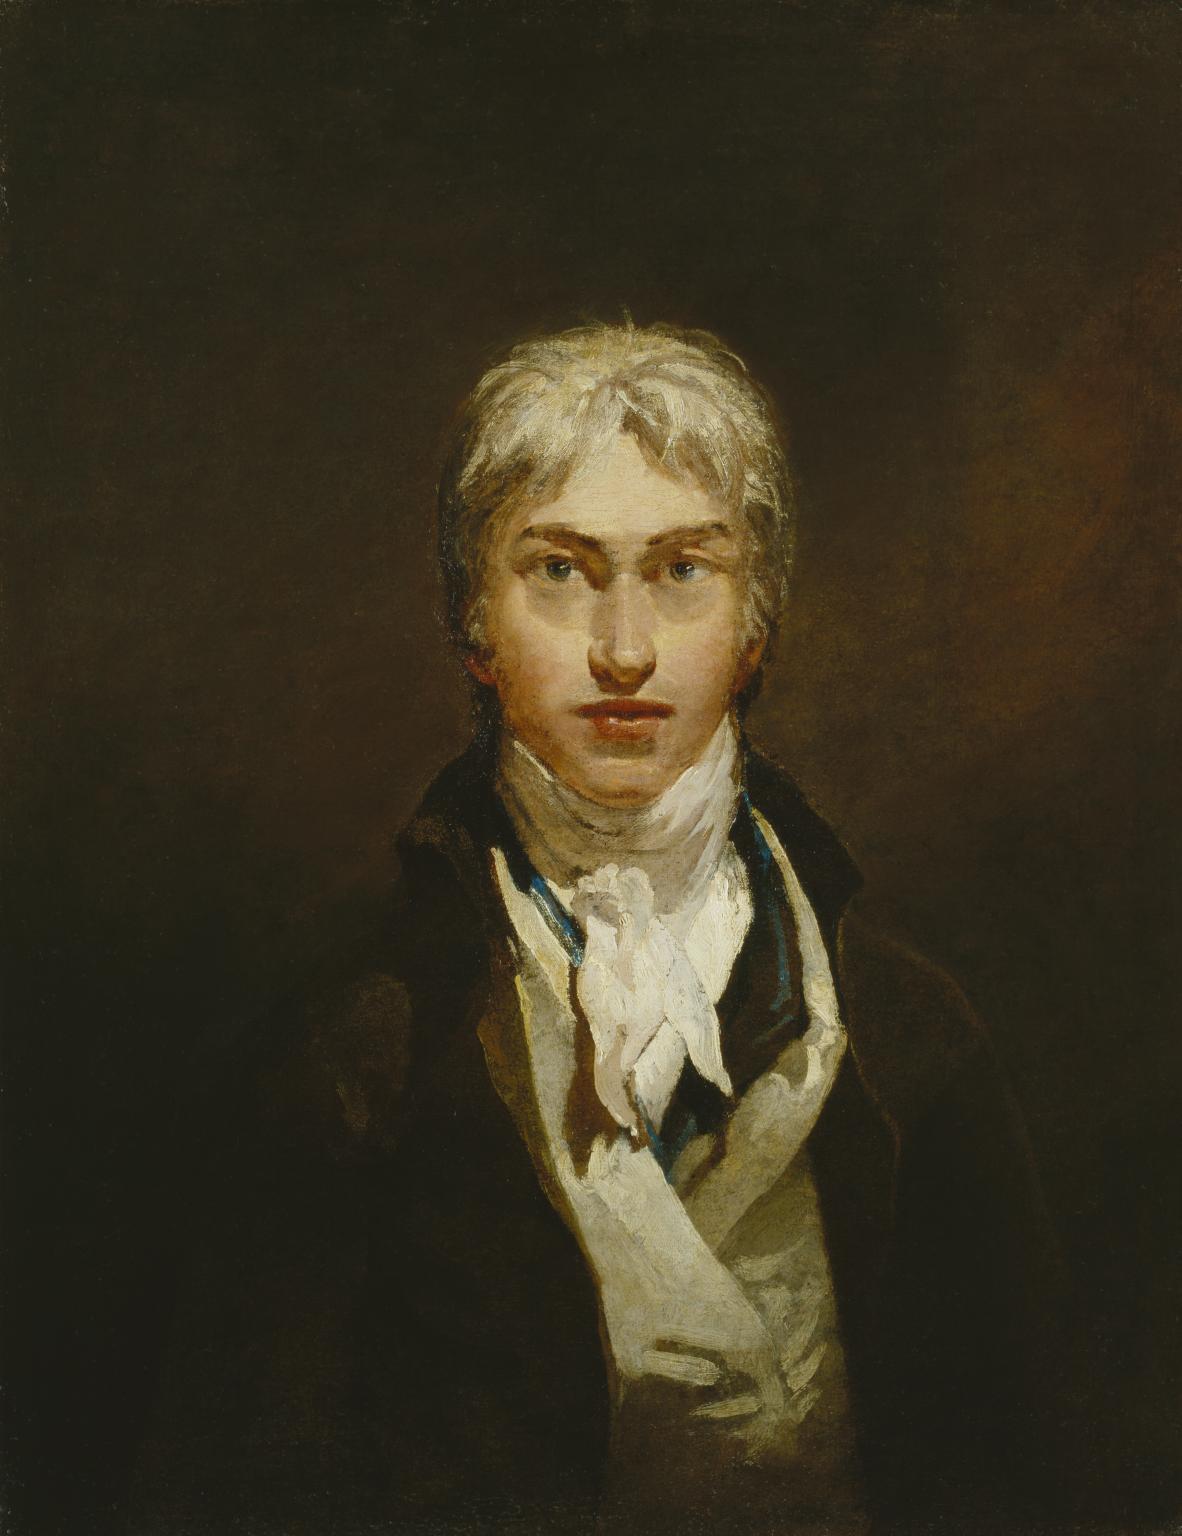 Joseph Mallord William Turner - 1775 - 19 décembre 1851